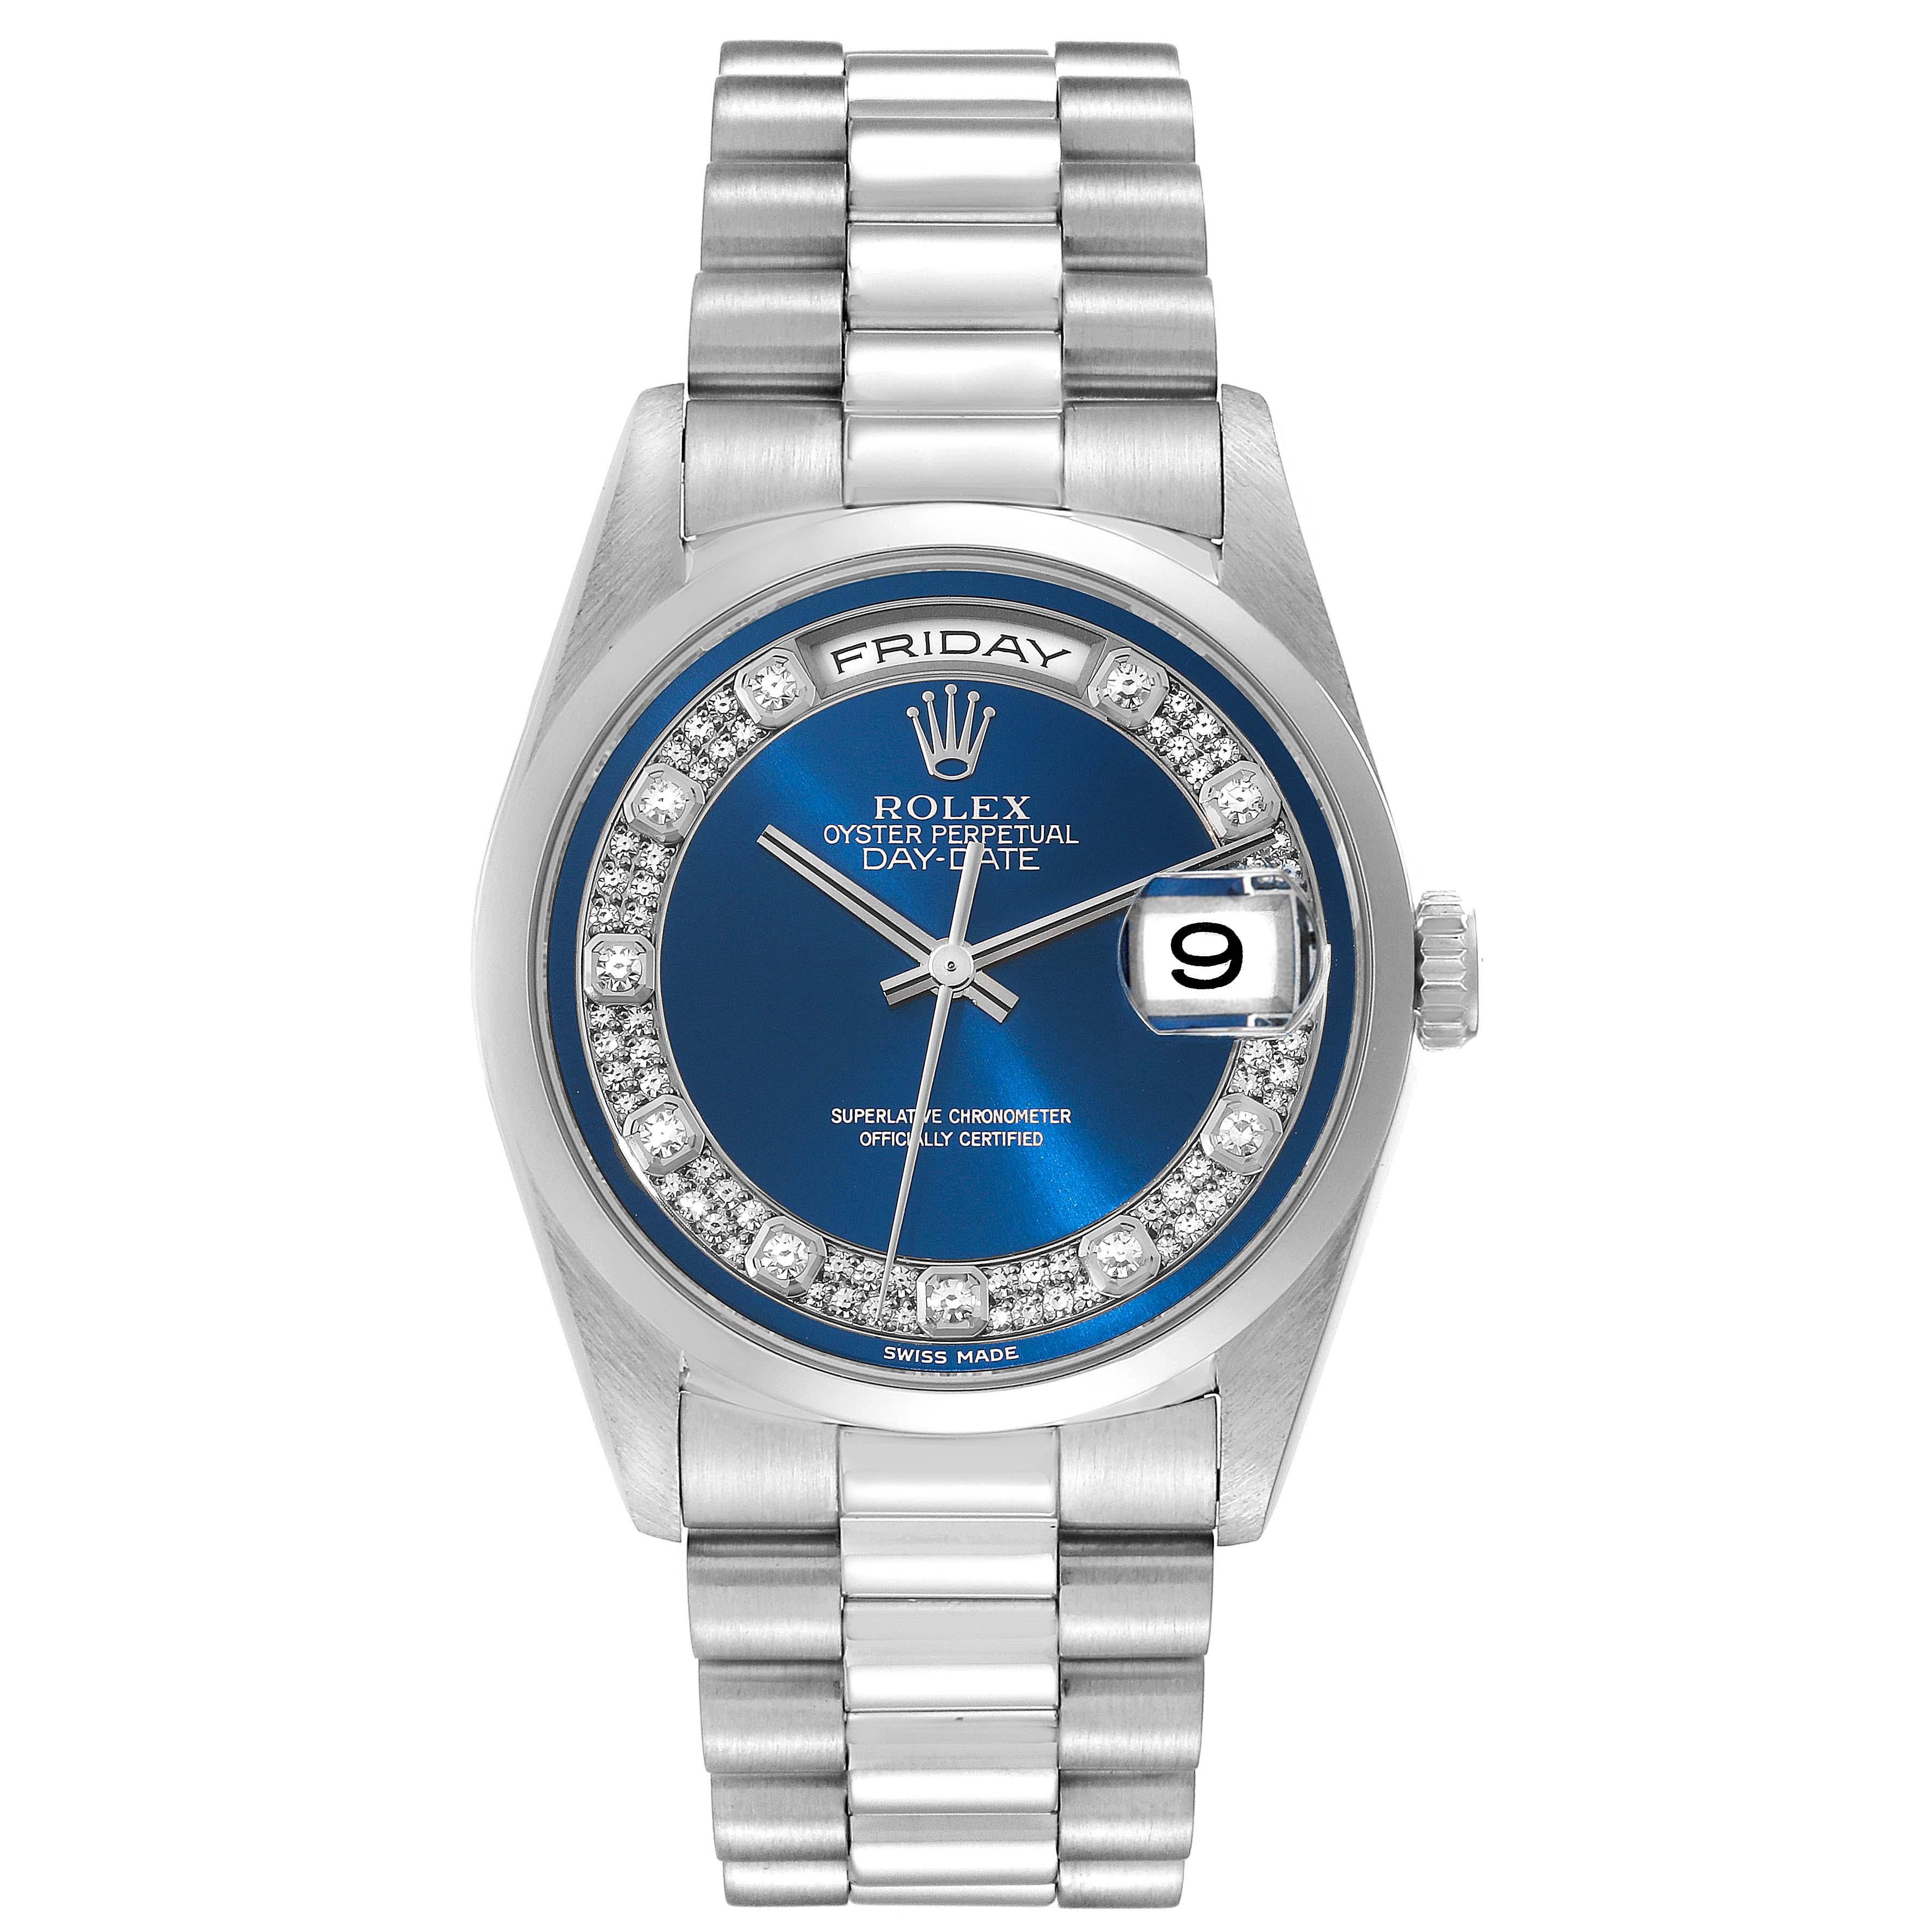 Rolex Präsident Day-Date Platinum Blue Diamond Dial Herrenuhr 18206 Box Papiere. Offiziell zertifiziertes Chronometerwerk mit automatischem Aufzug und Datumsschnellverstellung. Platin-Oyster-Gehäuse mit einem Durchmesser von 36 mm. Rolex Logo auf